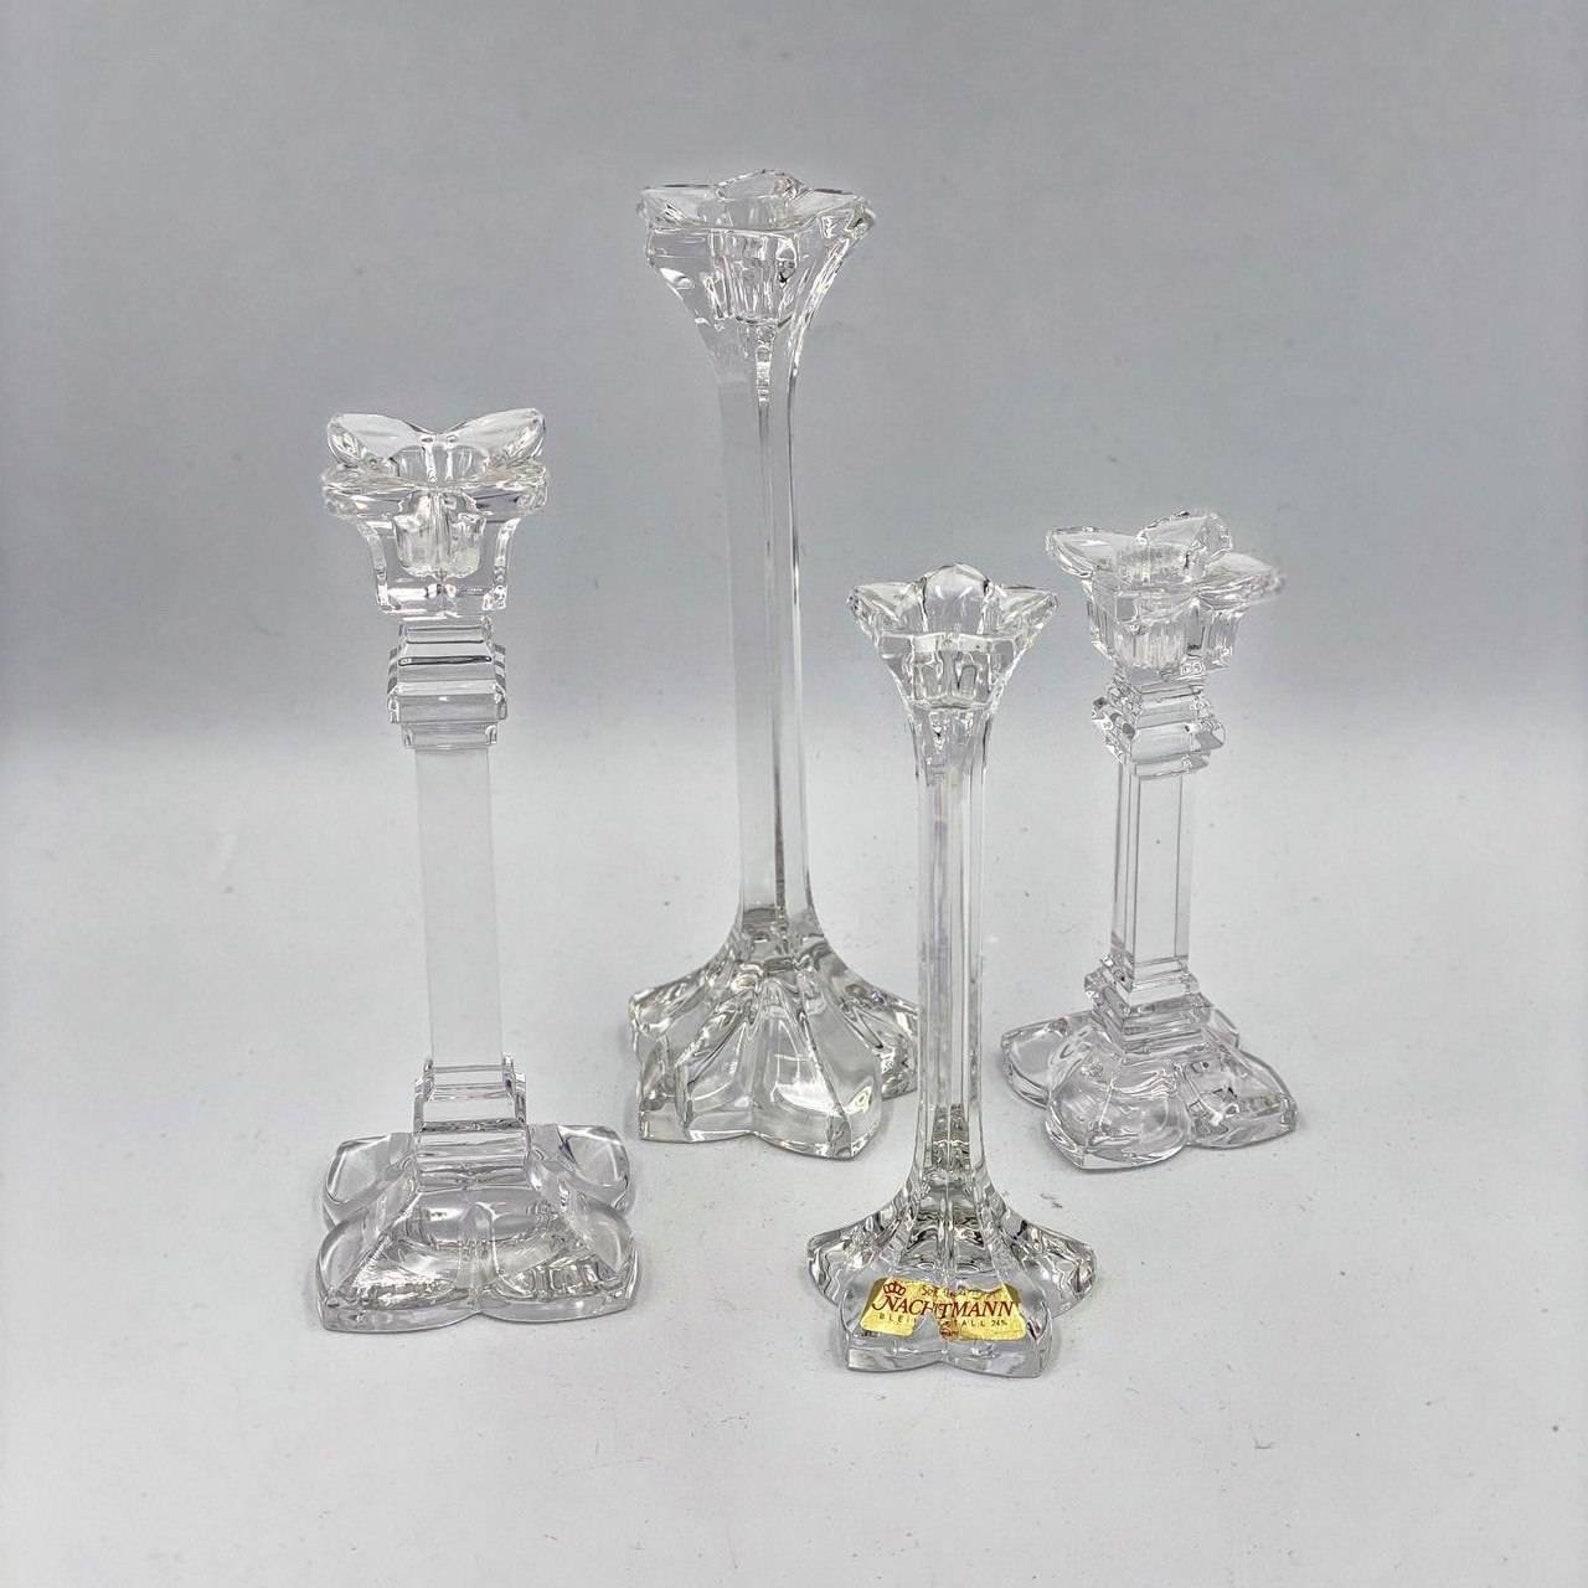 Ces chandeliers sont fabriqués en cristal de haute qualité - une véritable œuvre d'art. 

 La bougie brûlante installée dans le chandelier Nachtman évoque des sentiments romantiques et tendres chez une personne. Et ils font partie intégrante de